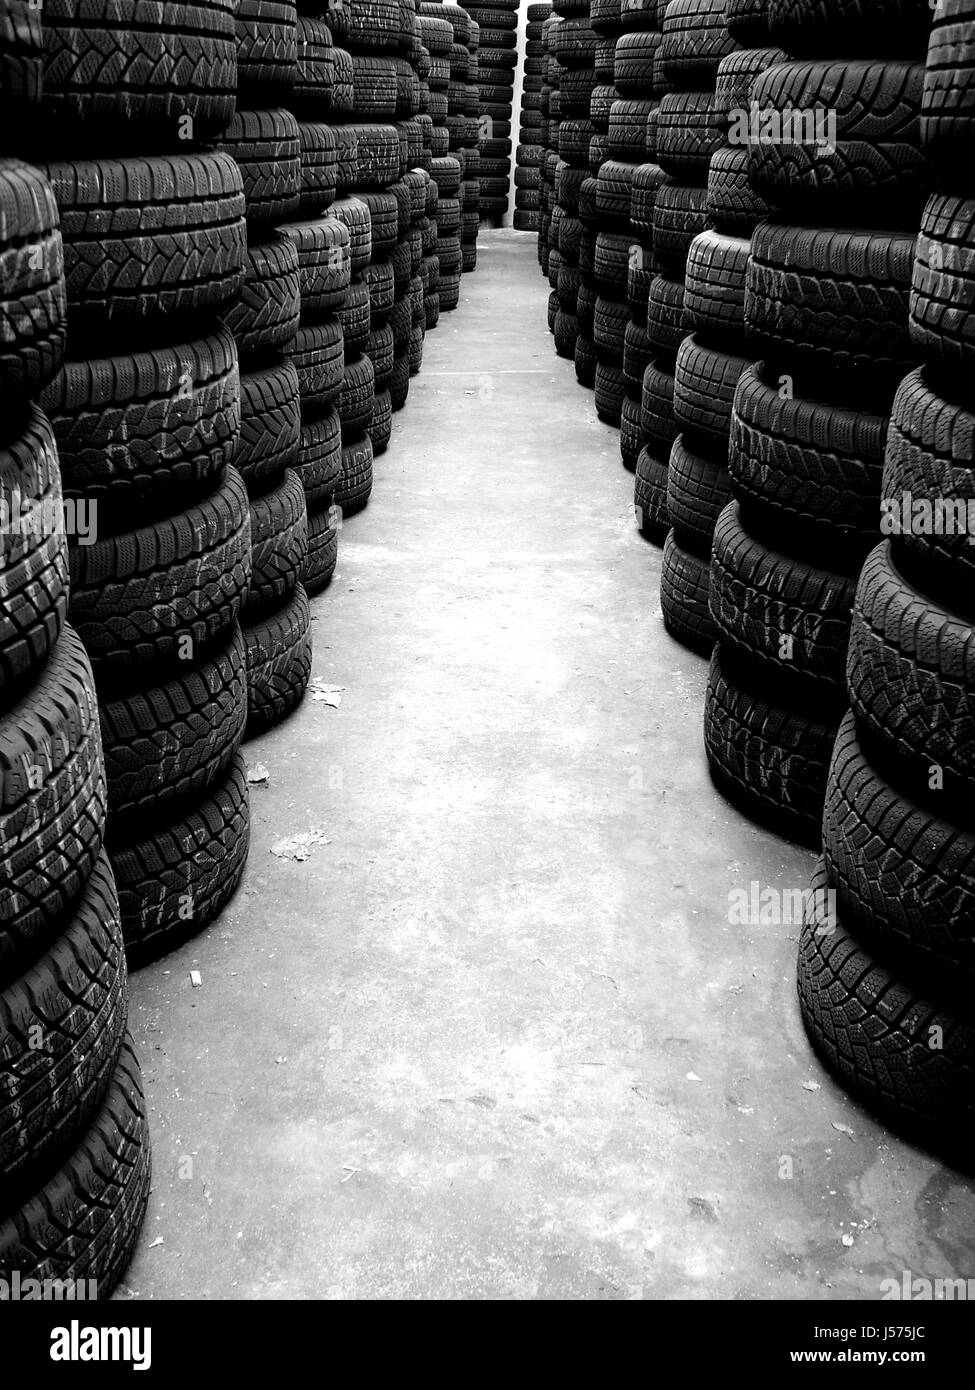 tires street sw Stock Photo